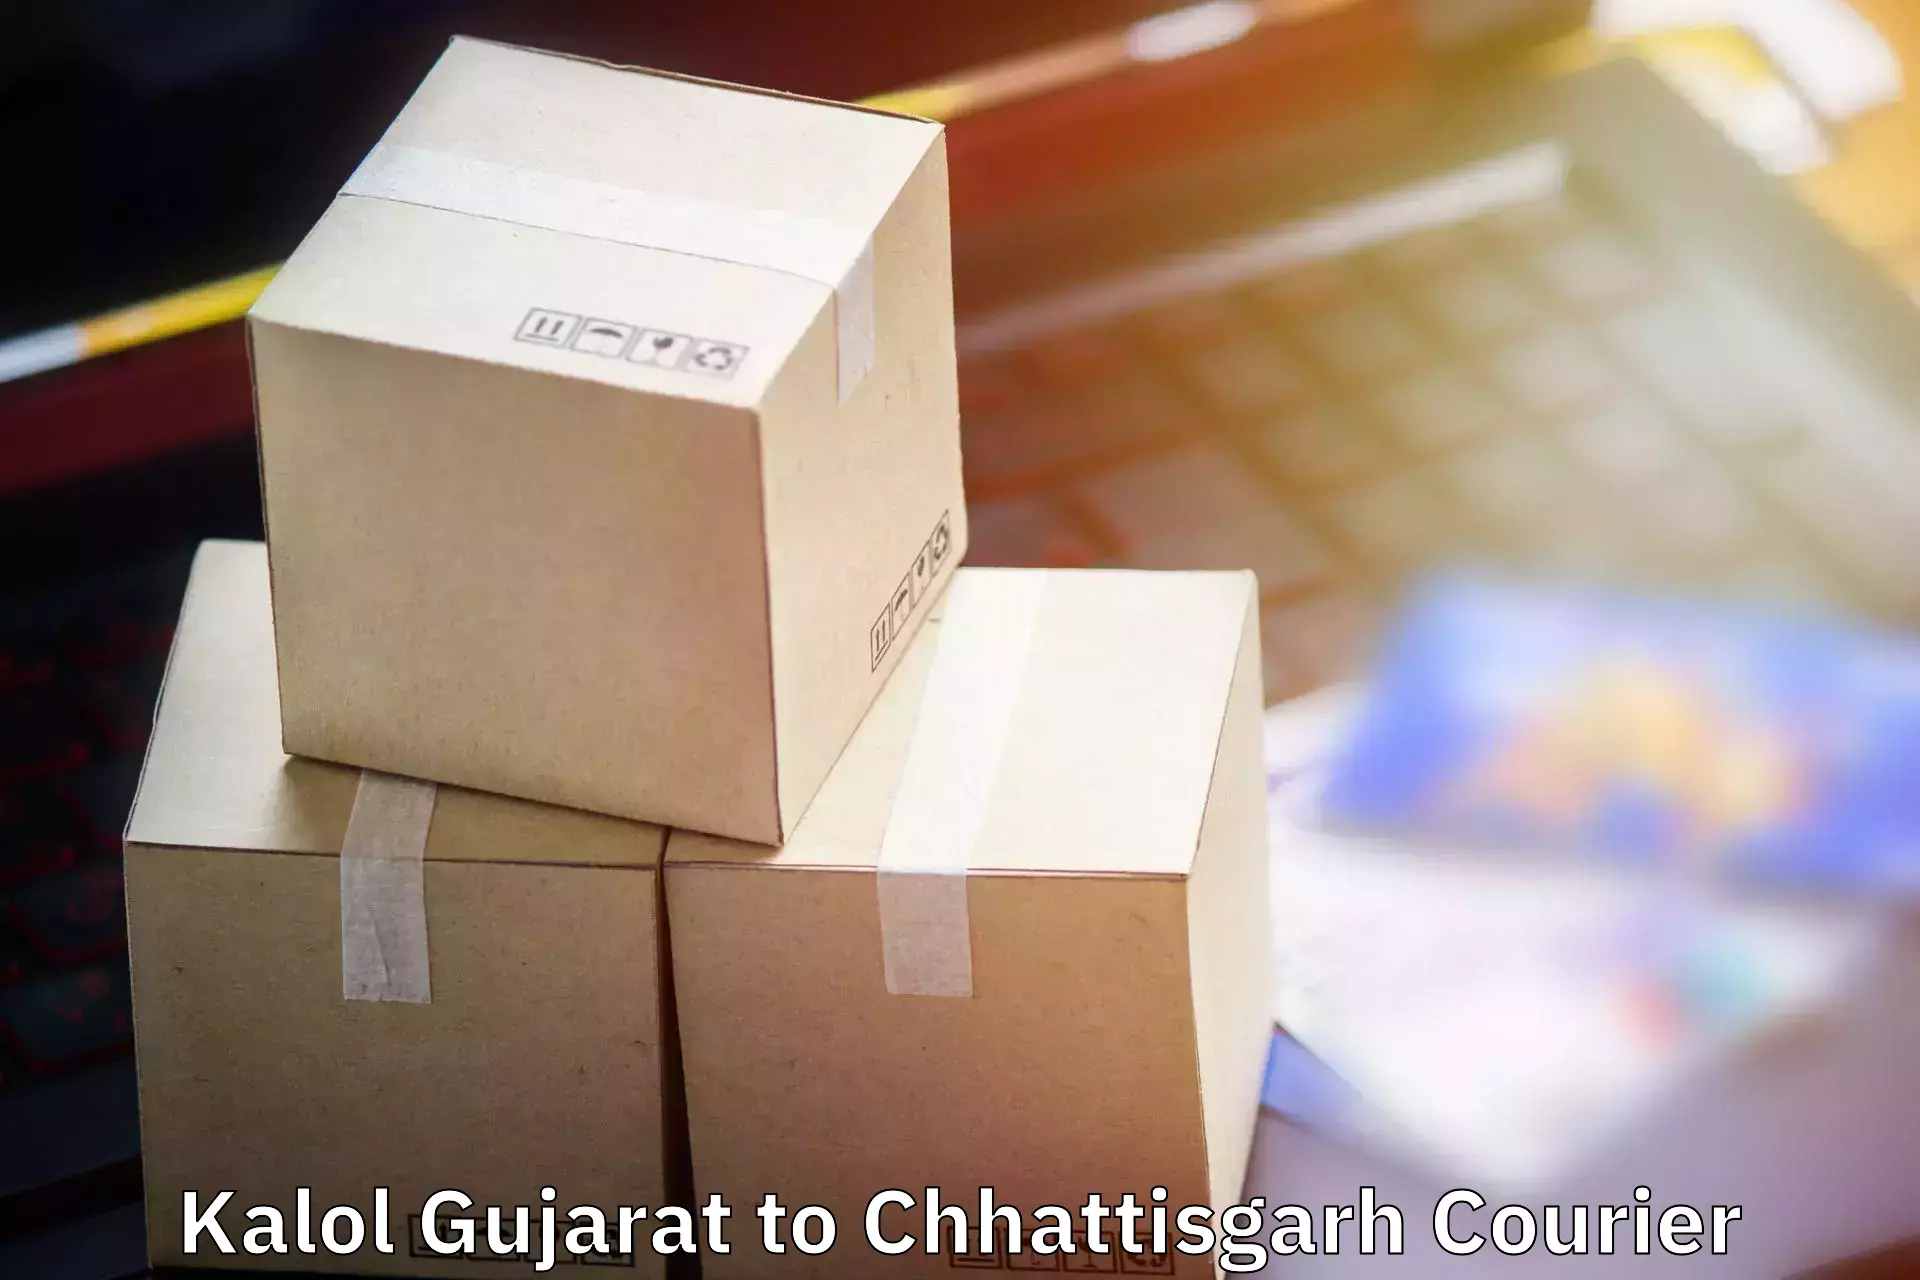 Baggage relocation service Kalol Gujarat to Korba